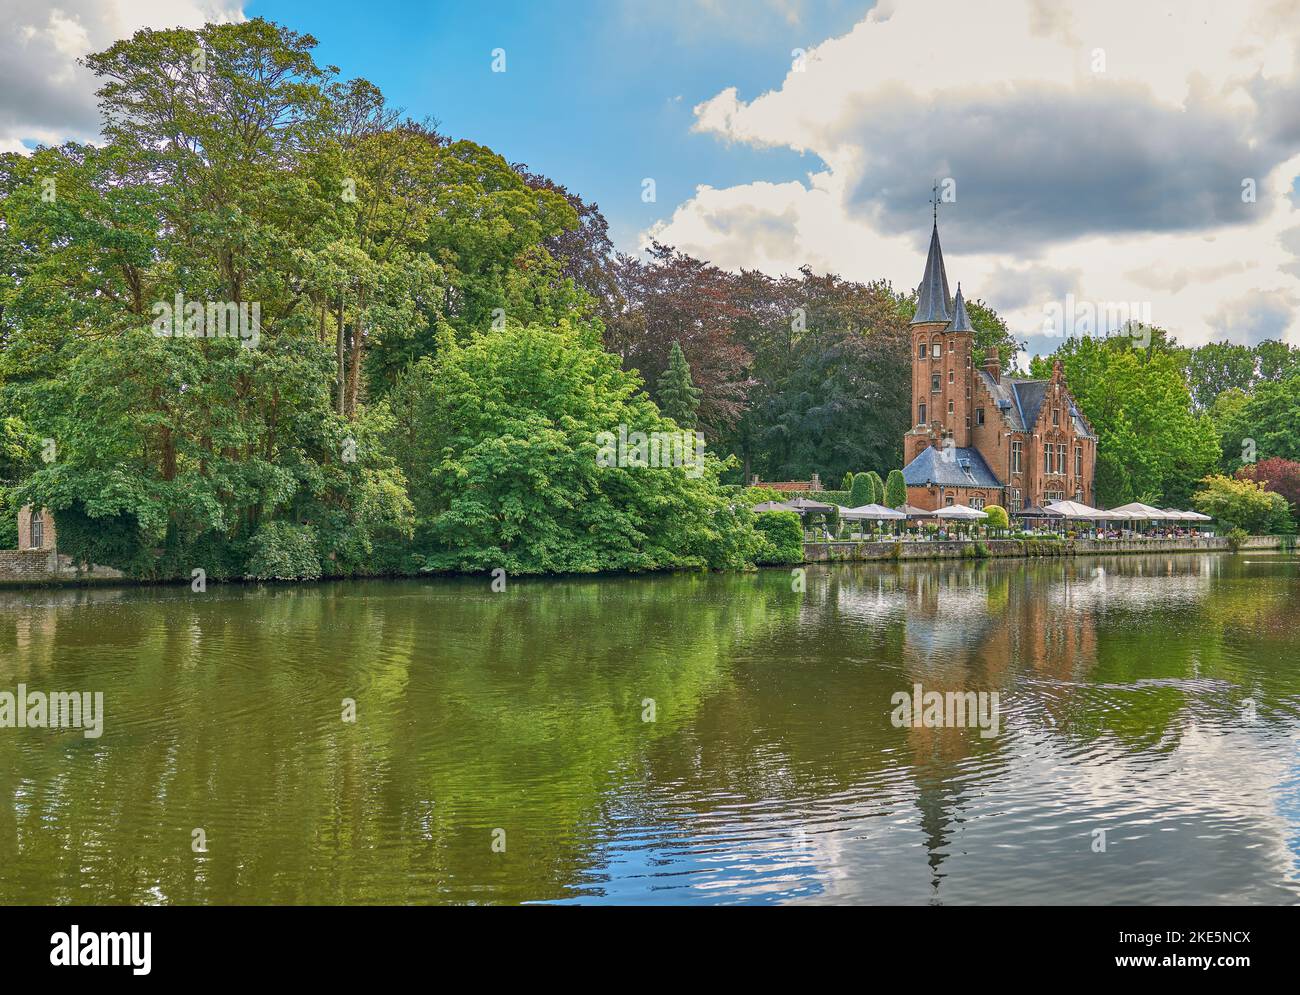 Brügge, Belgien - 21. Juli 2020: Das Schloss, gotischer Ferienort am Minnewater See (See der Liebe) Stockfoto